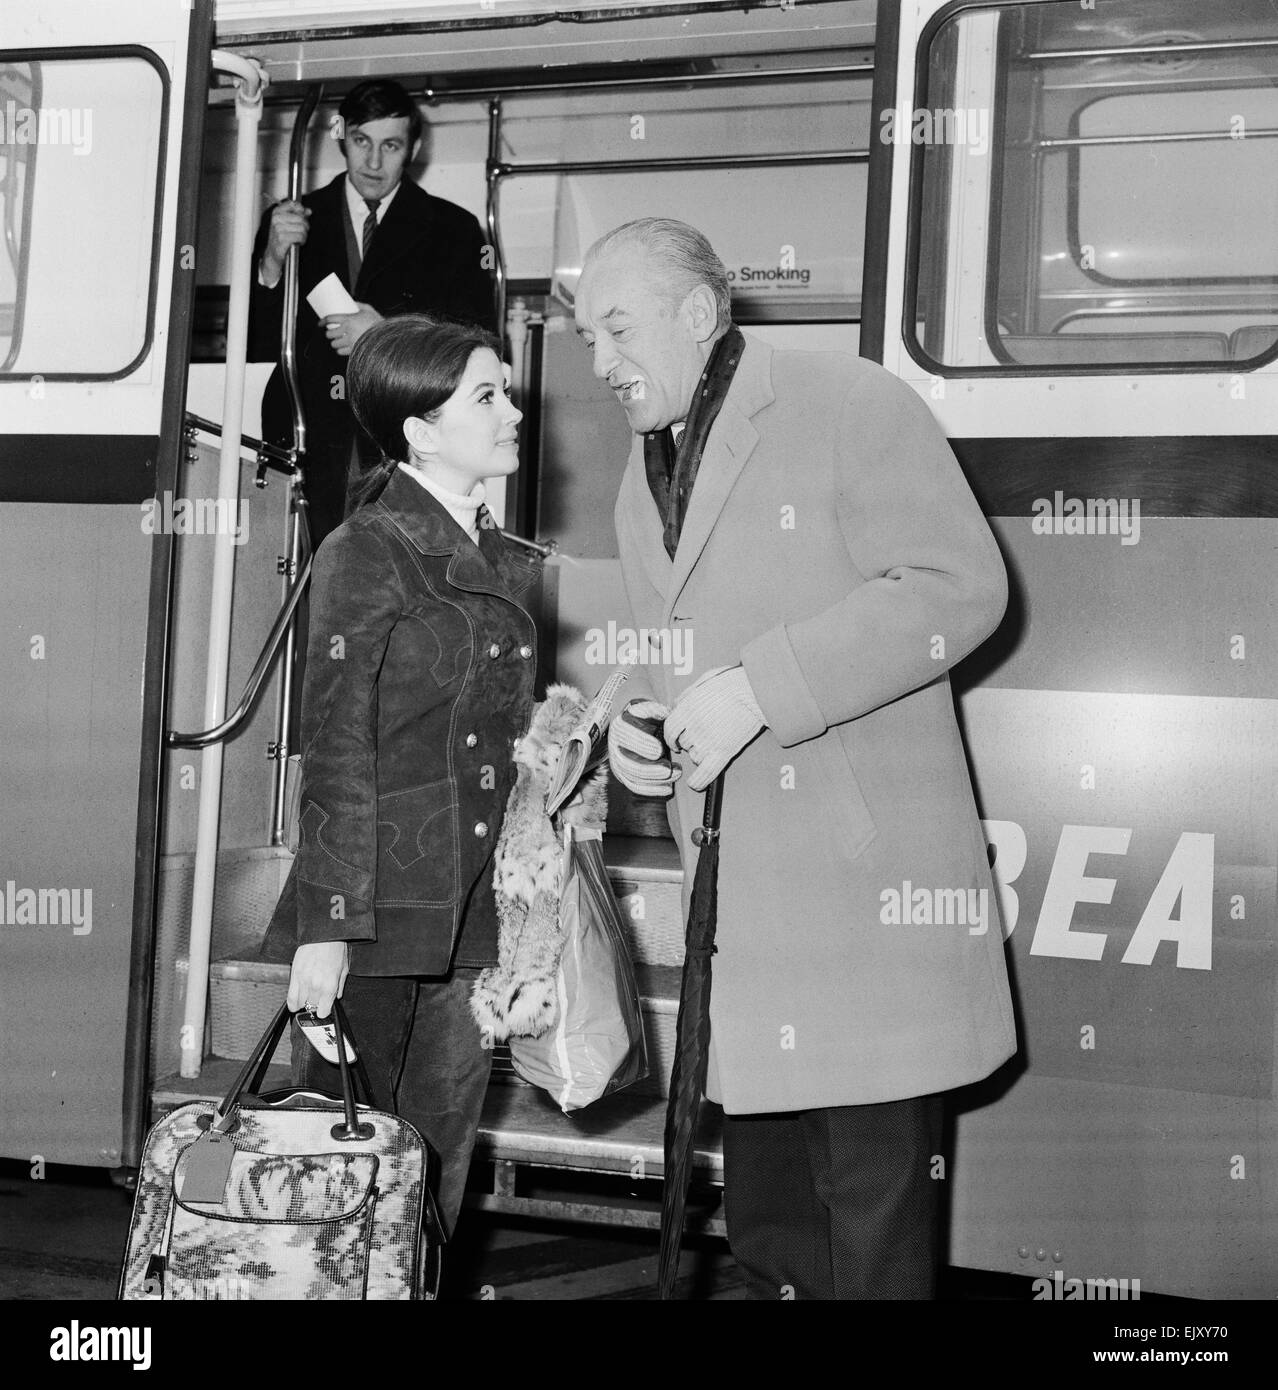 Barbara Parkins, Fernsehen & Film Schauspielerin abgebildet, Ankunft am Flughafen London Heathrow 21. Februar 1969.    Barbara ist auf dem Weg nach Helsinki, zu beginnen die Dreharbeiten zu "The Kremlin Letter", ein Spionage-Thriller auf dem Höhepunkt des Kalten Krieges eingestellt.    Abgebildet mit dem Schauspieler George Sanders, dürfte die Überschrift für den gleichen Film. Es ist das erste Mal trafen sie haben durch die Fotografen eingeführt wurde. Stockfoto